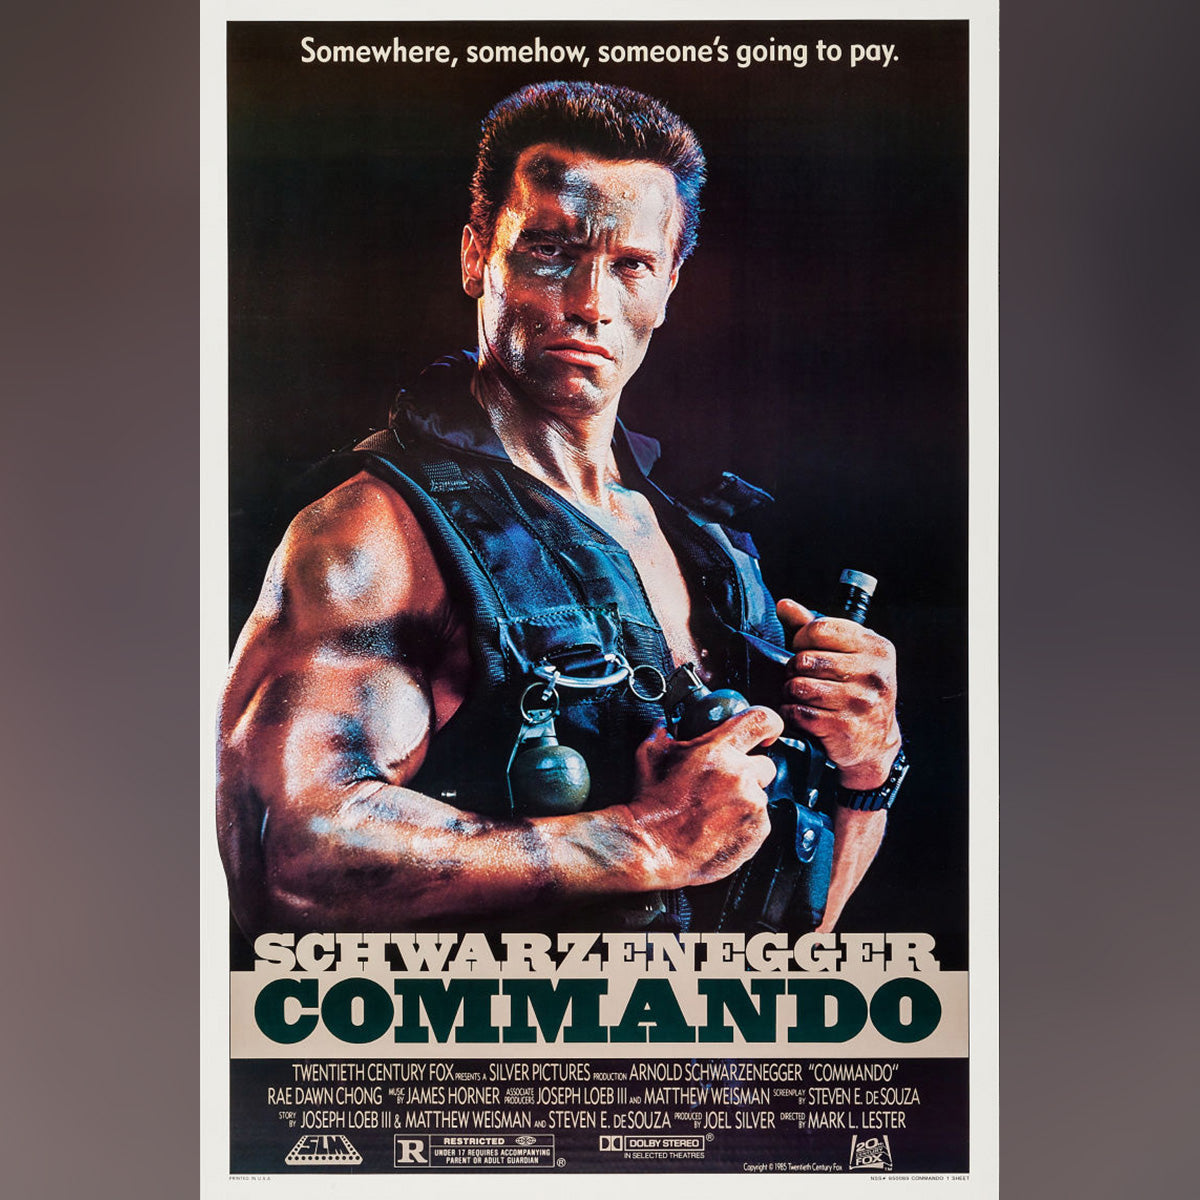 Original Movie Poster of Commando (1985)